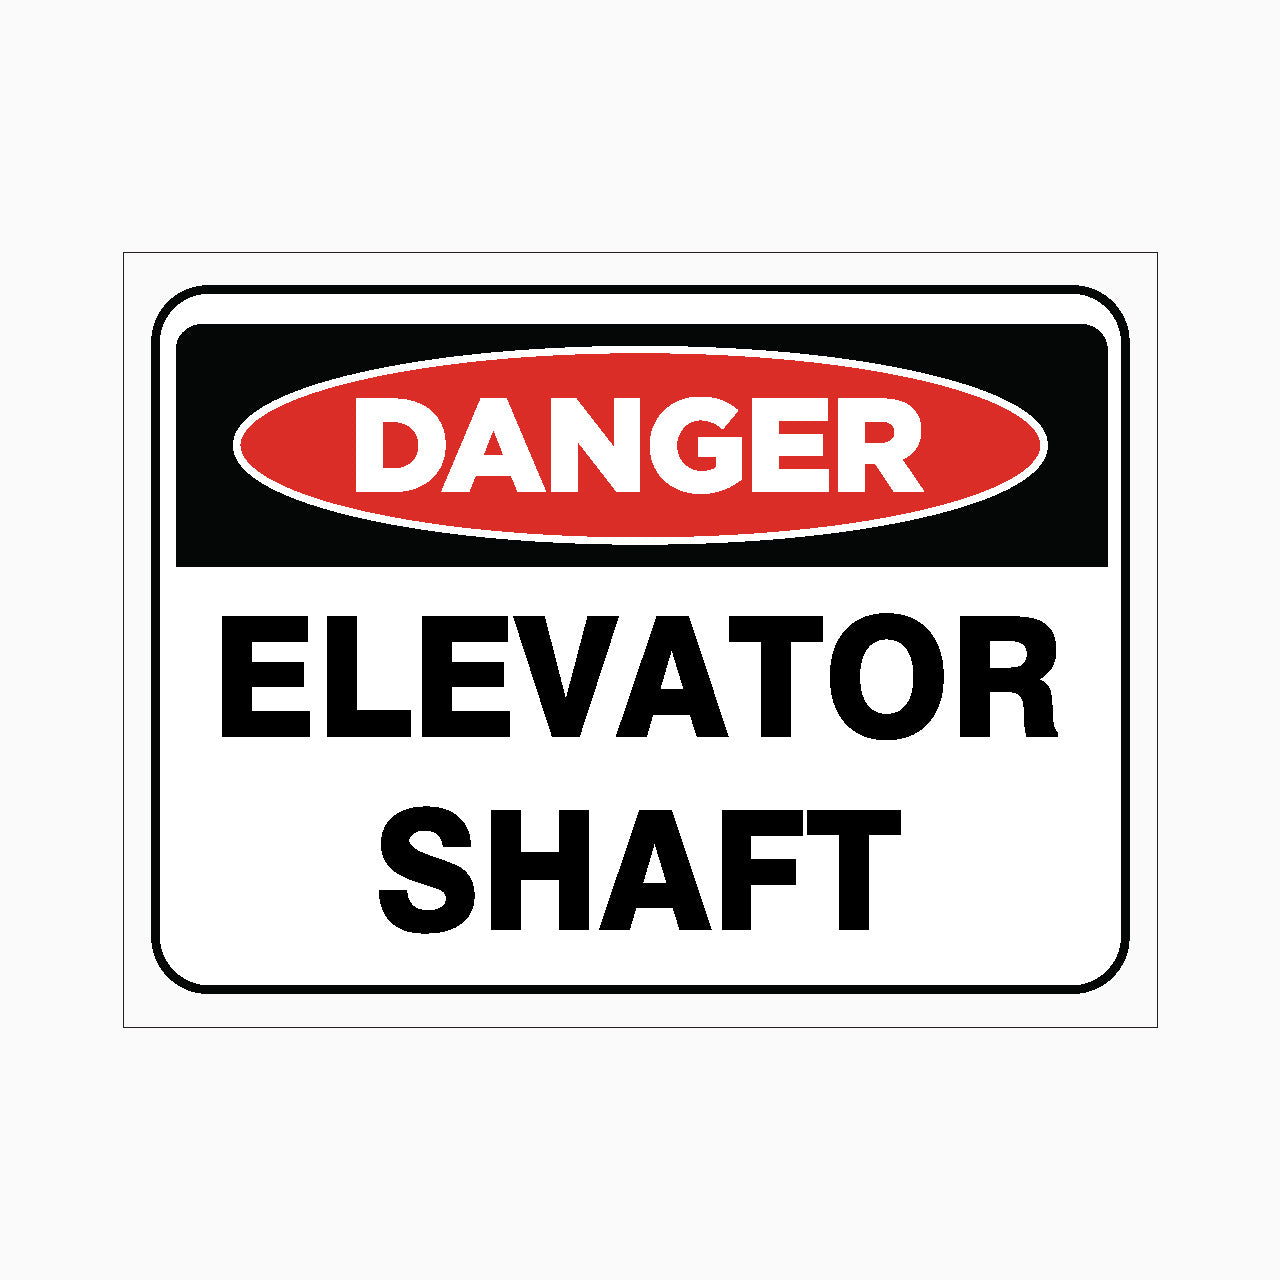 ELEVATOR SHAFT SIGN - DANGER SIGN